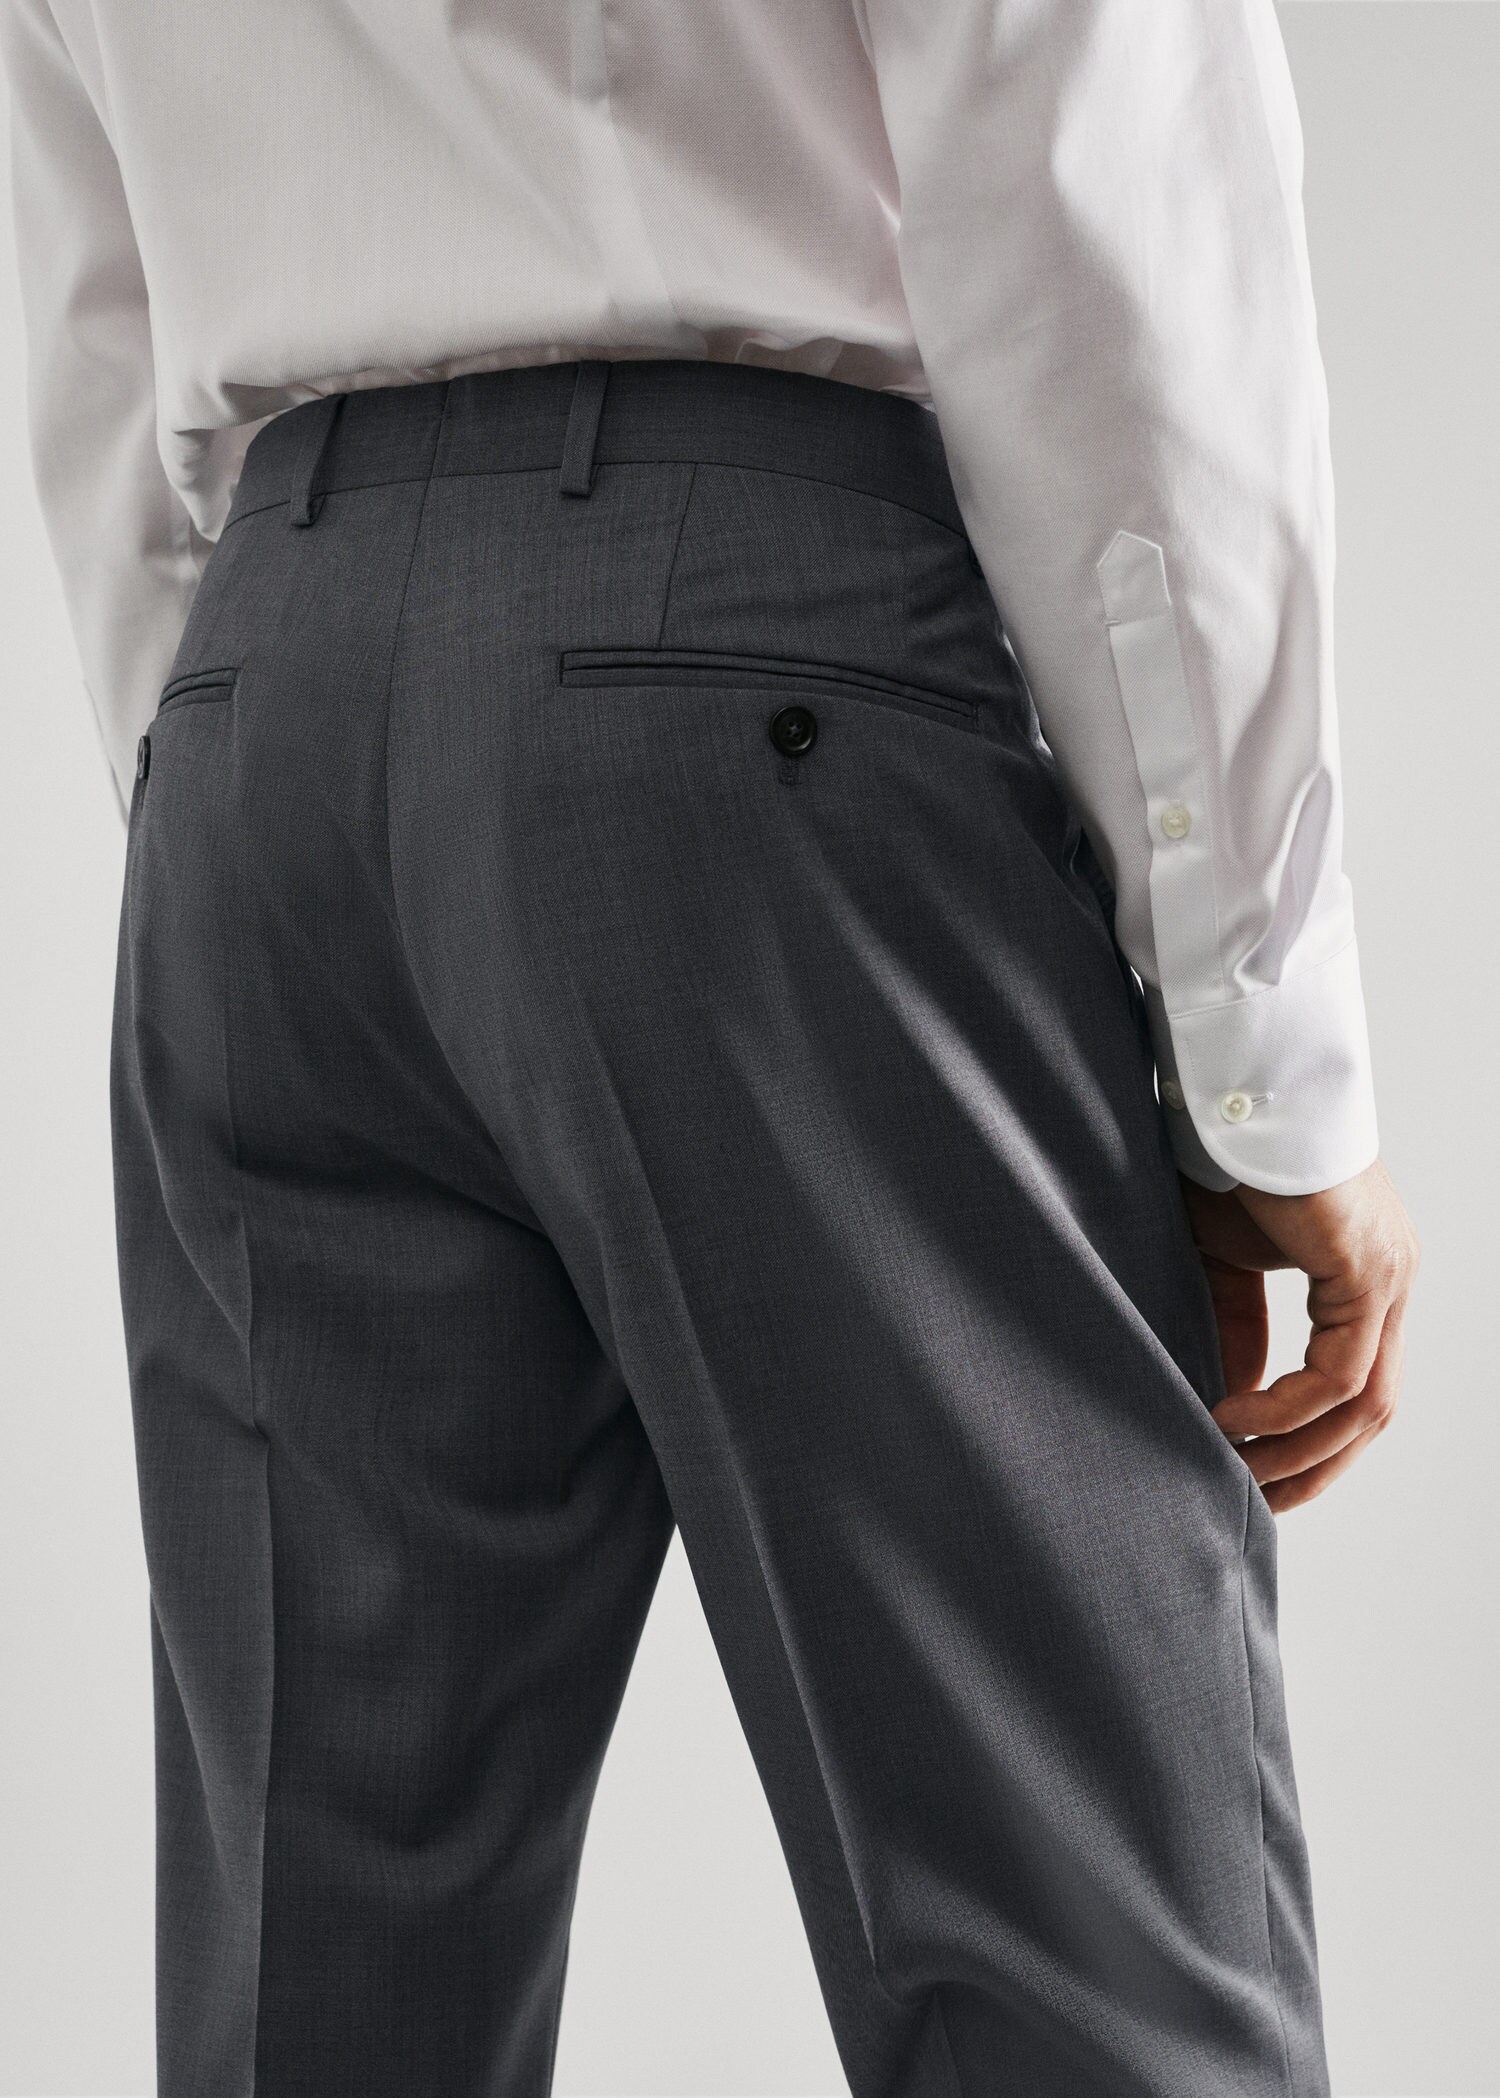 Pantalón traje slim fit lana virgen - Detalle del artículo 2